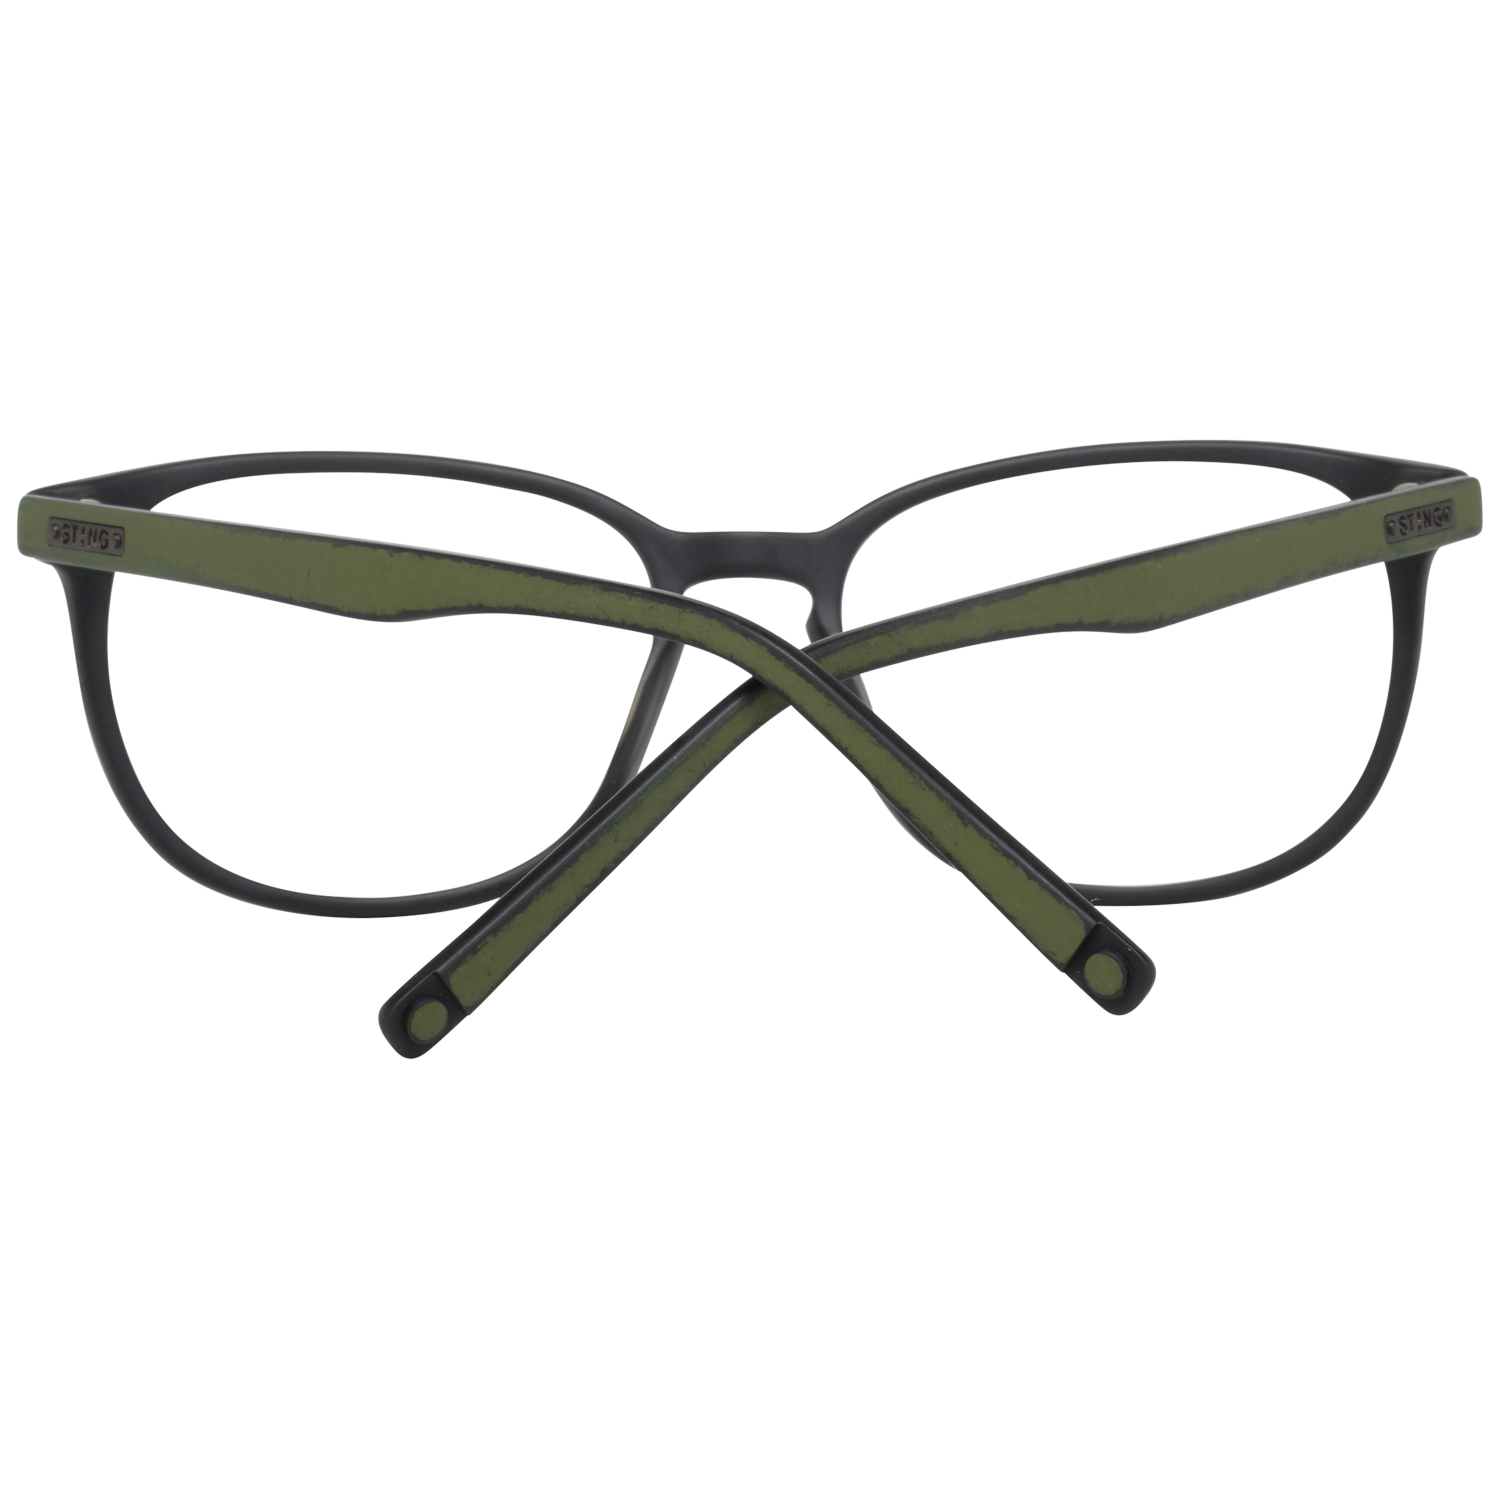 Sting Frames Sting Optical Frame VST040 6X3M 53 Eyeglasses Eyewear UK USA Australia 